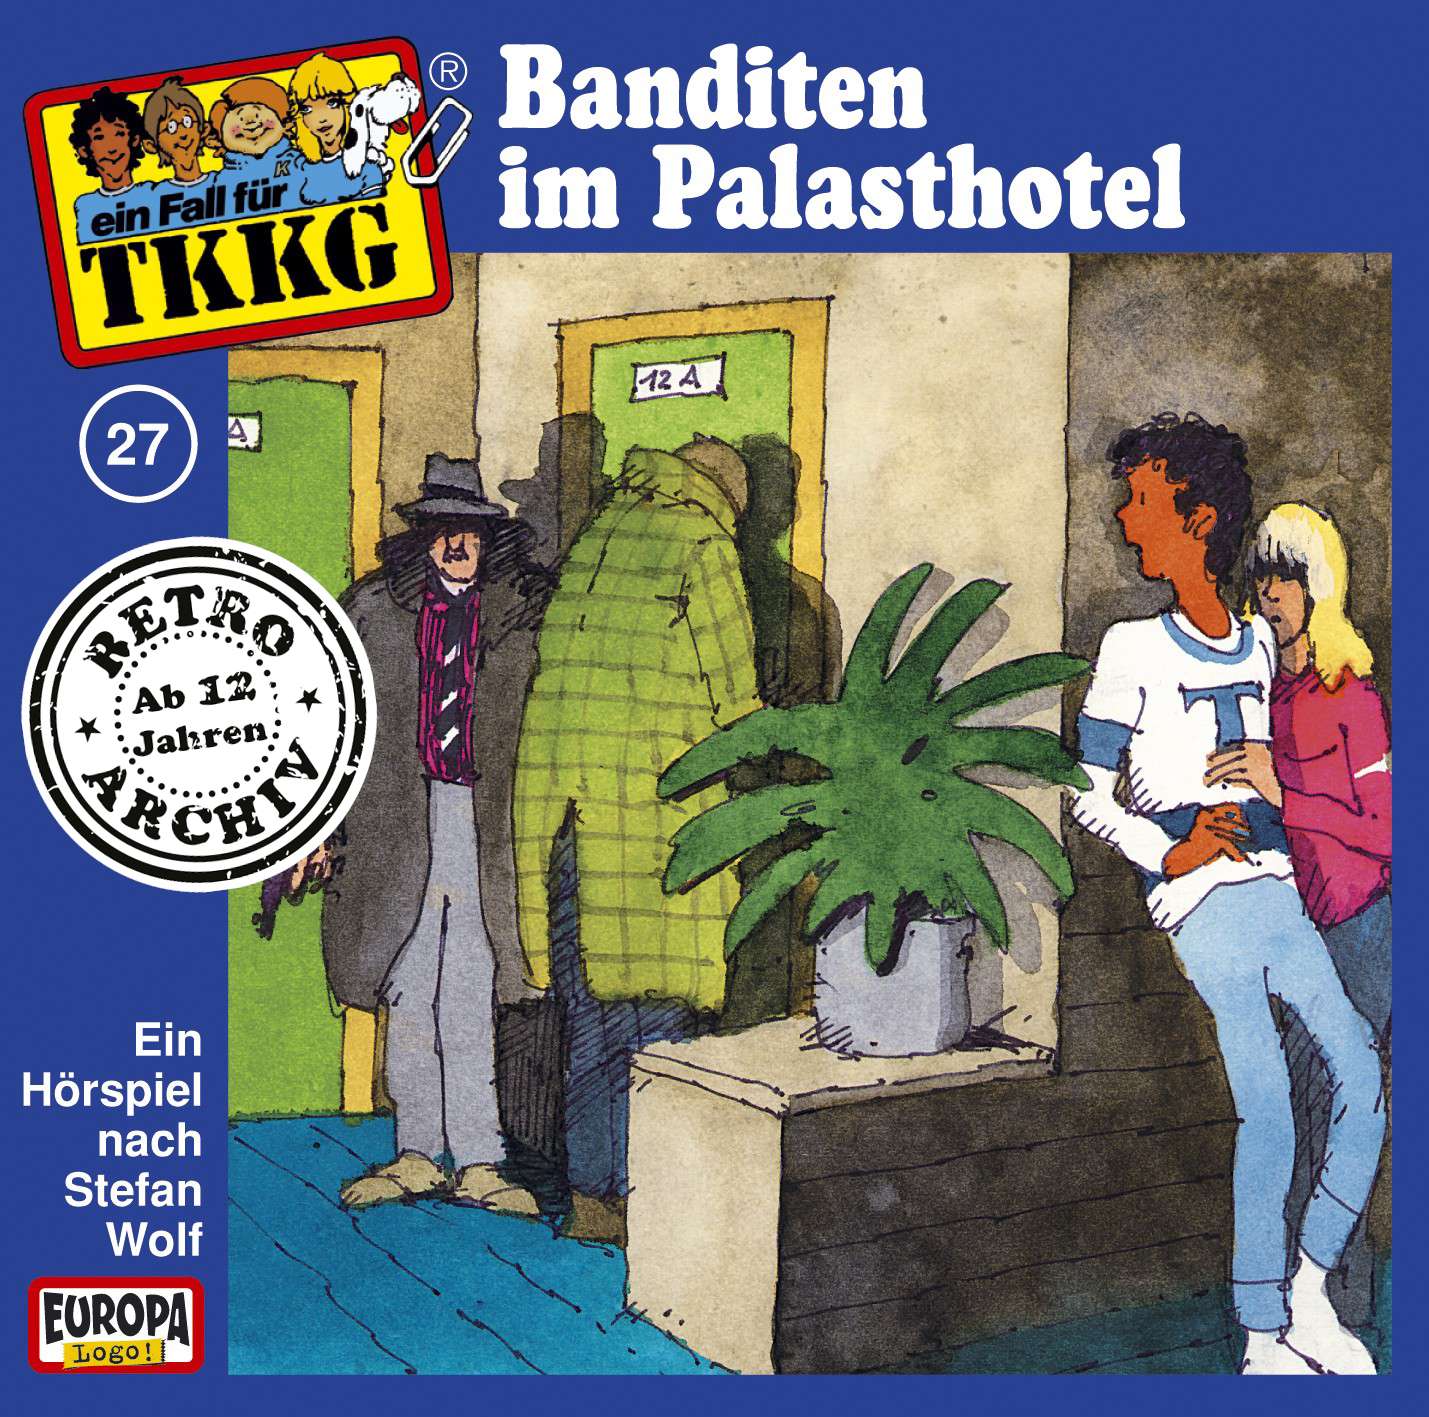 TKKG Retro-Archiv: Banditen im Palasthotel